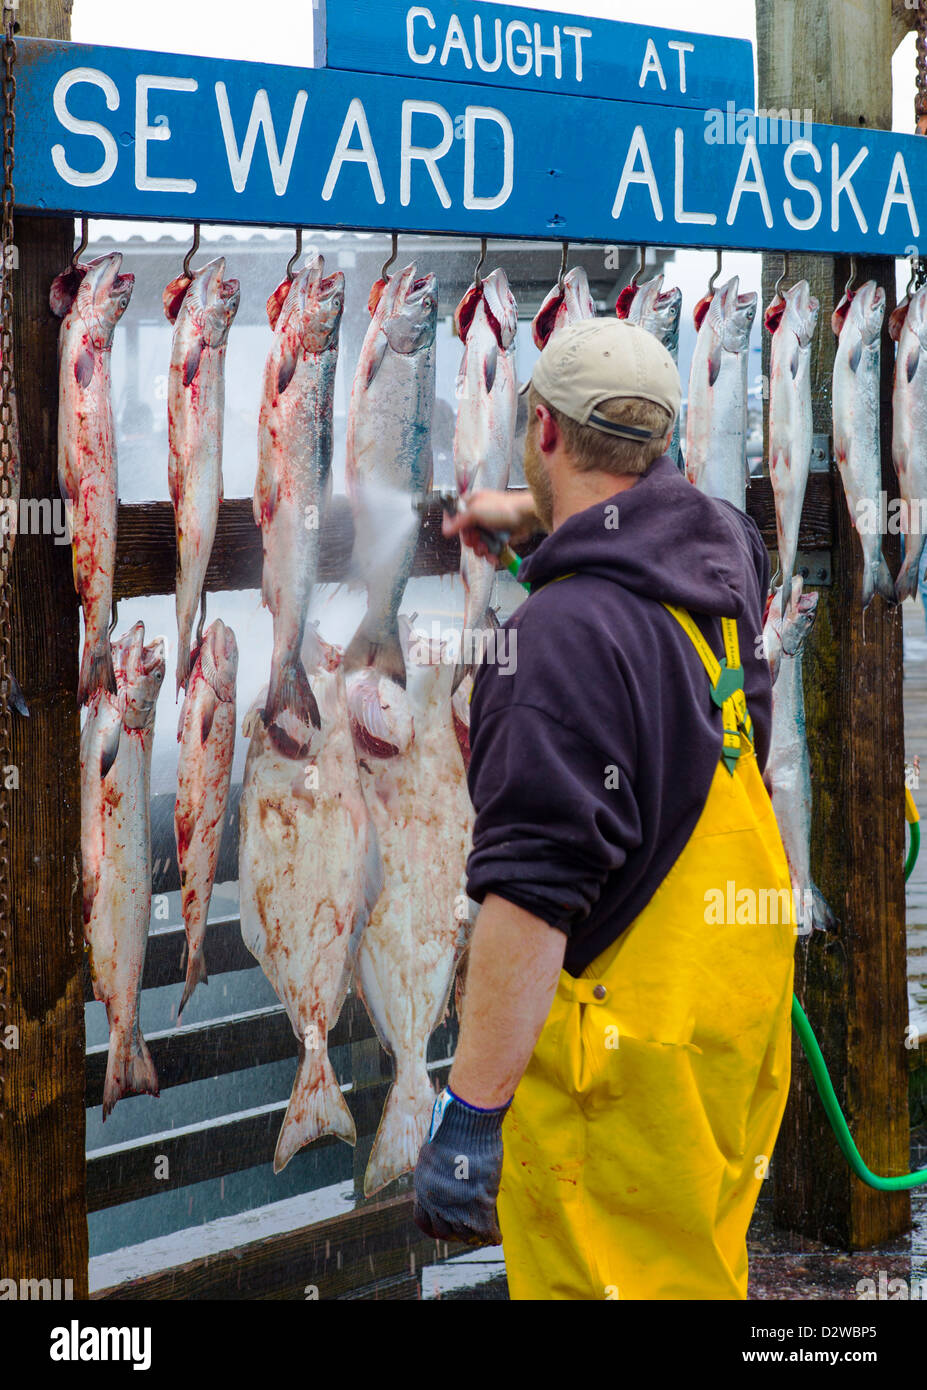 Charter Barche da pesca capitani appendere il pescato del giorno per il cliente le fotografie, Seward, Alaska, STATI UNITI D'AMERICA Foto Stock